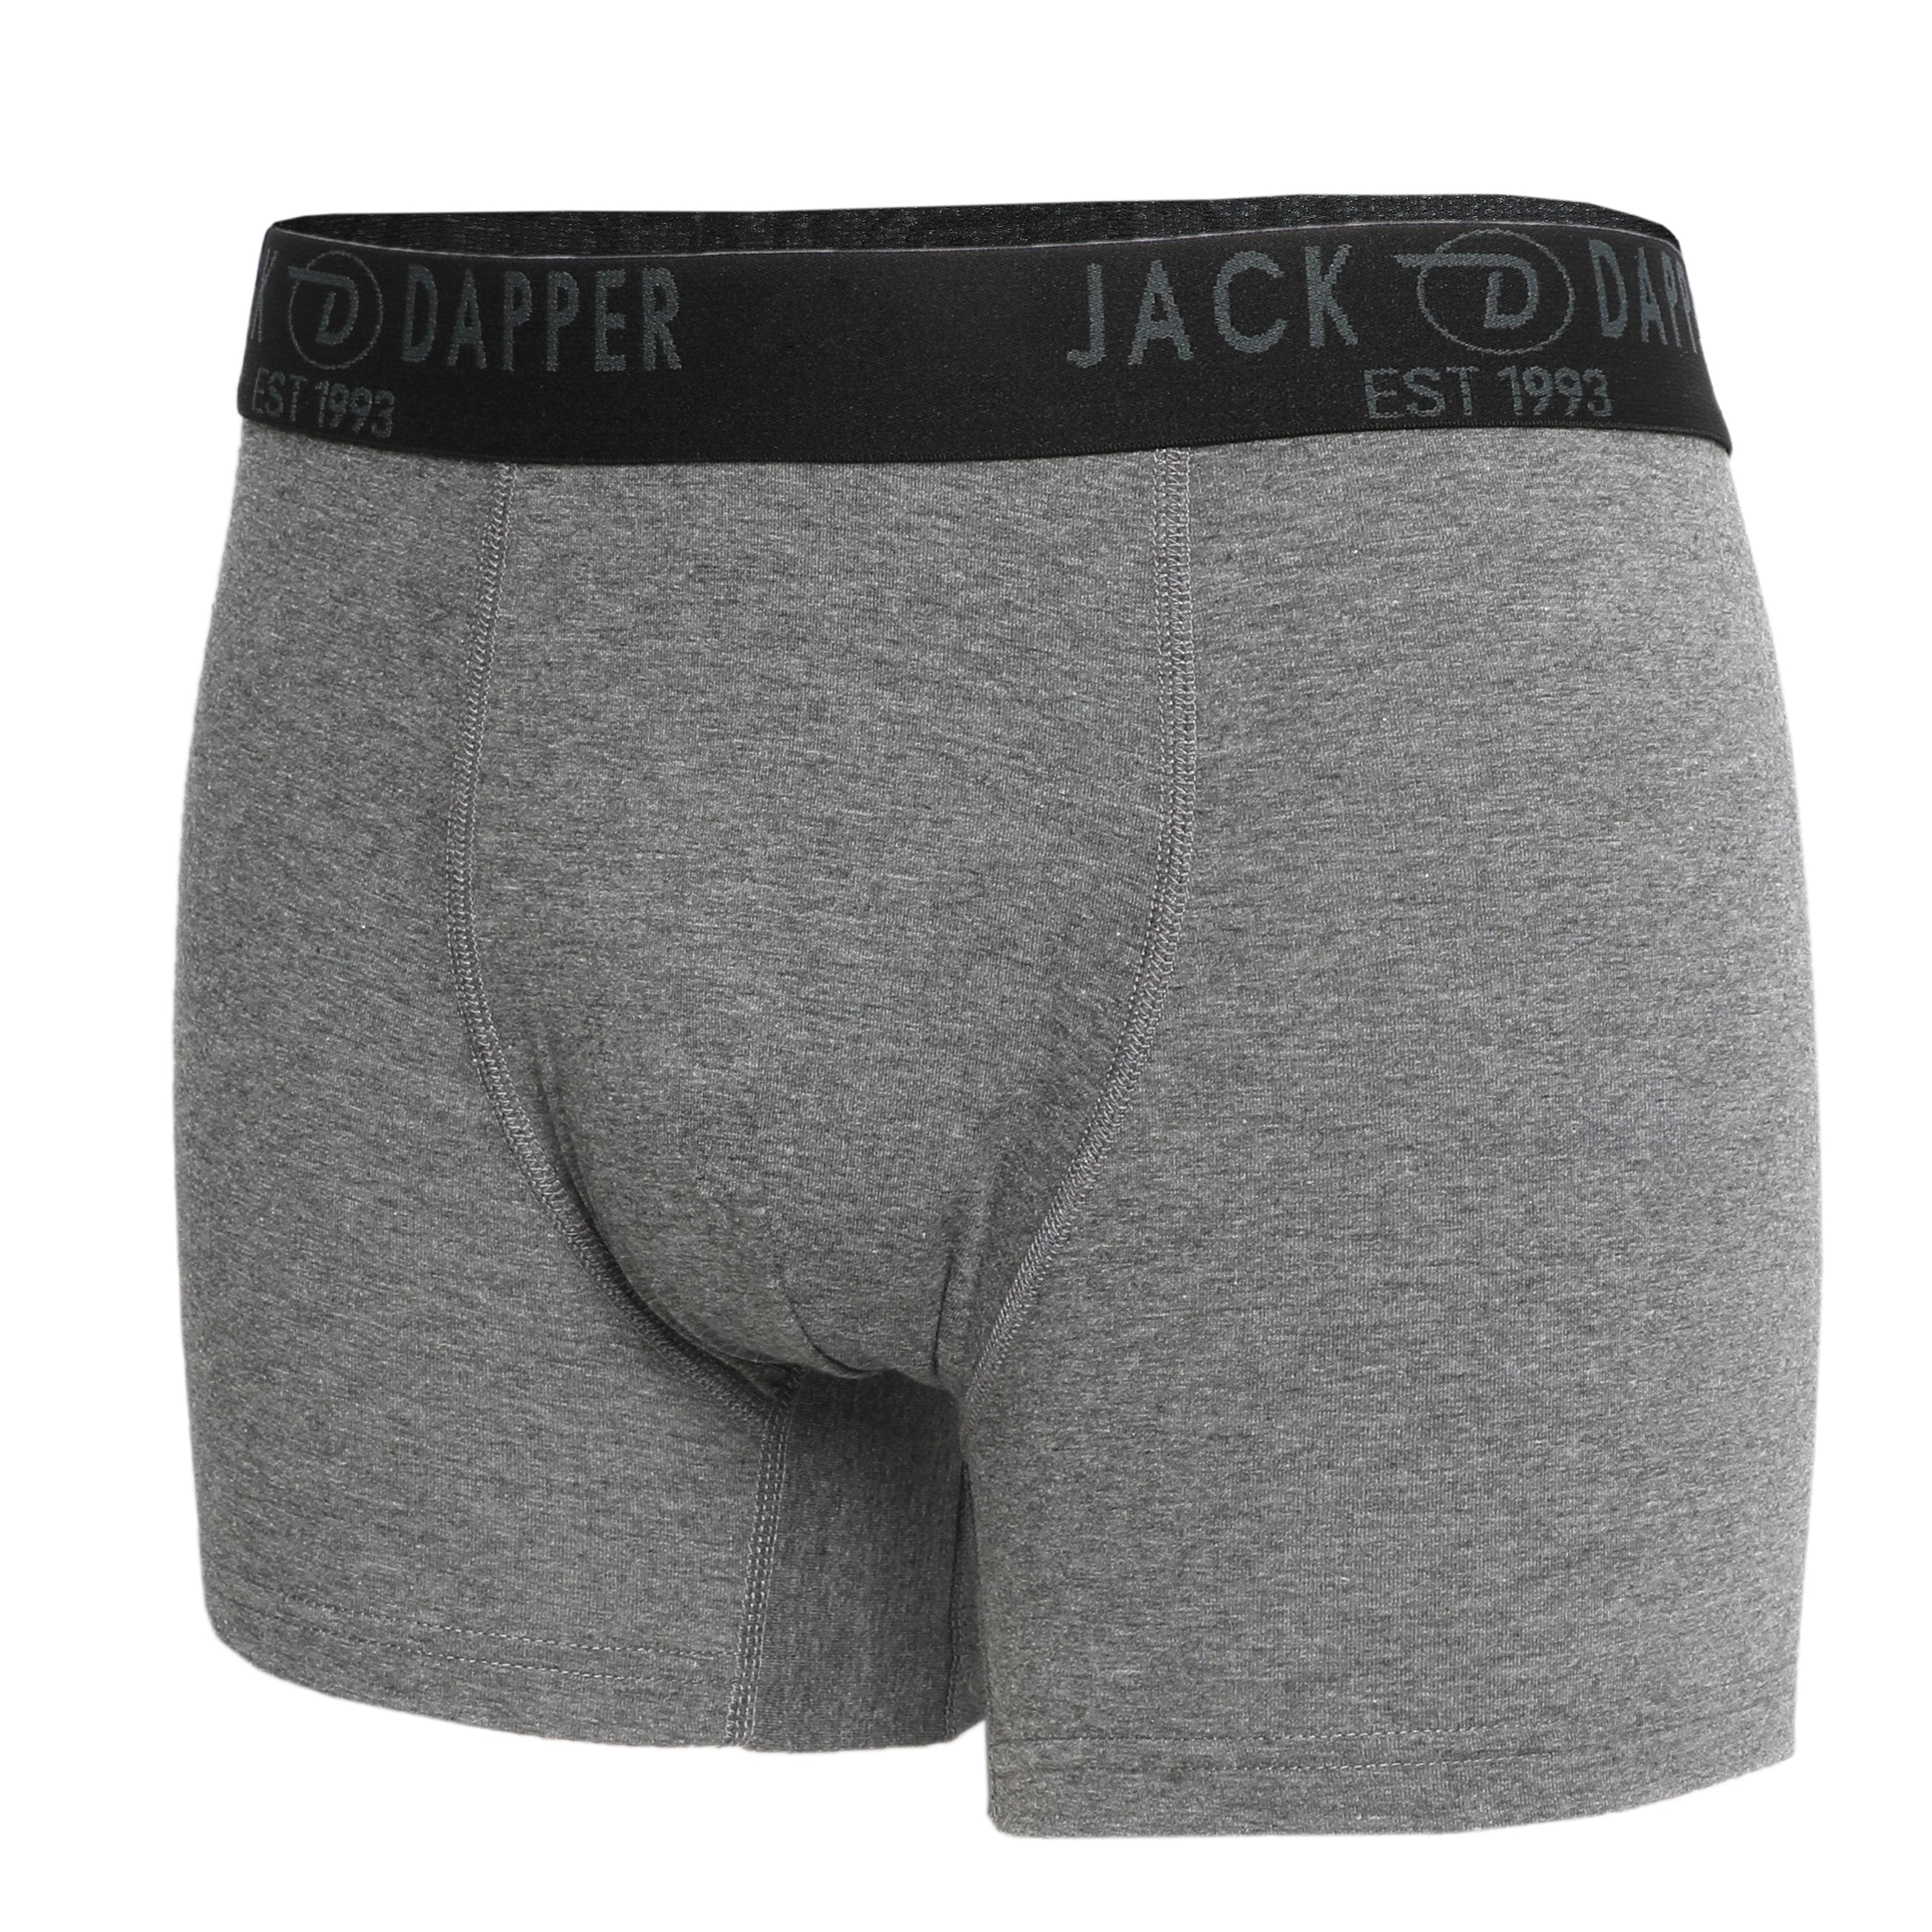 Jack Dapper Dark Grey 2-Piece Cotton Underwear